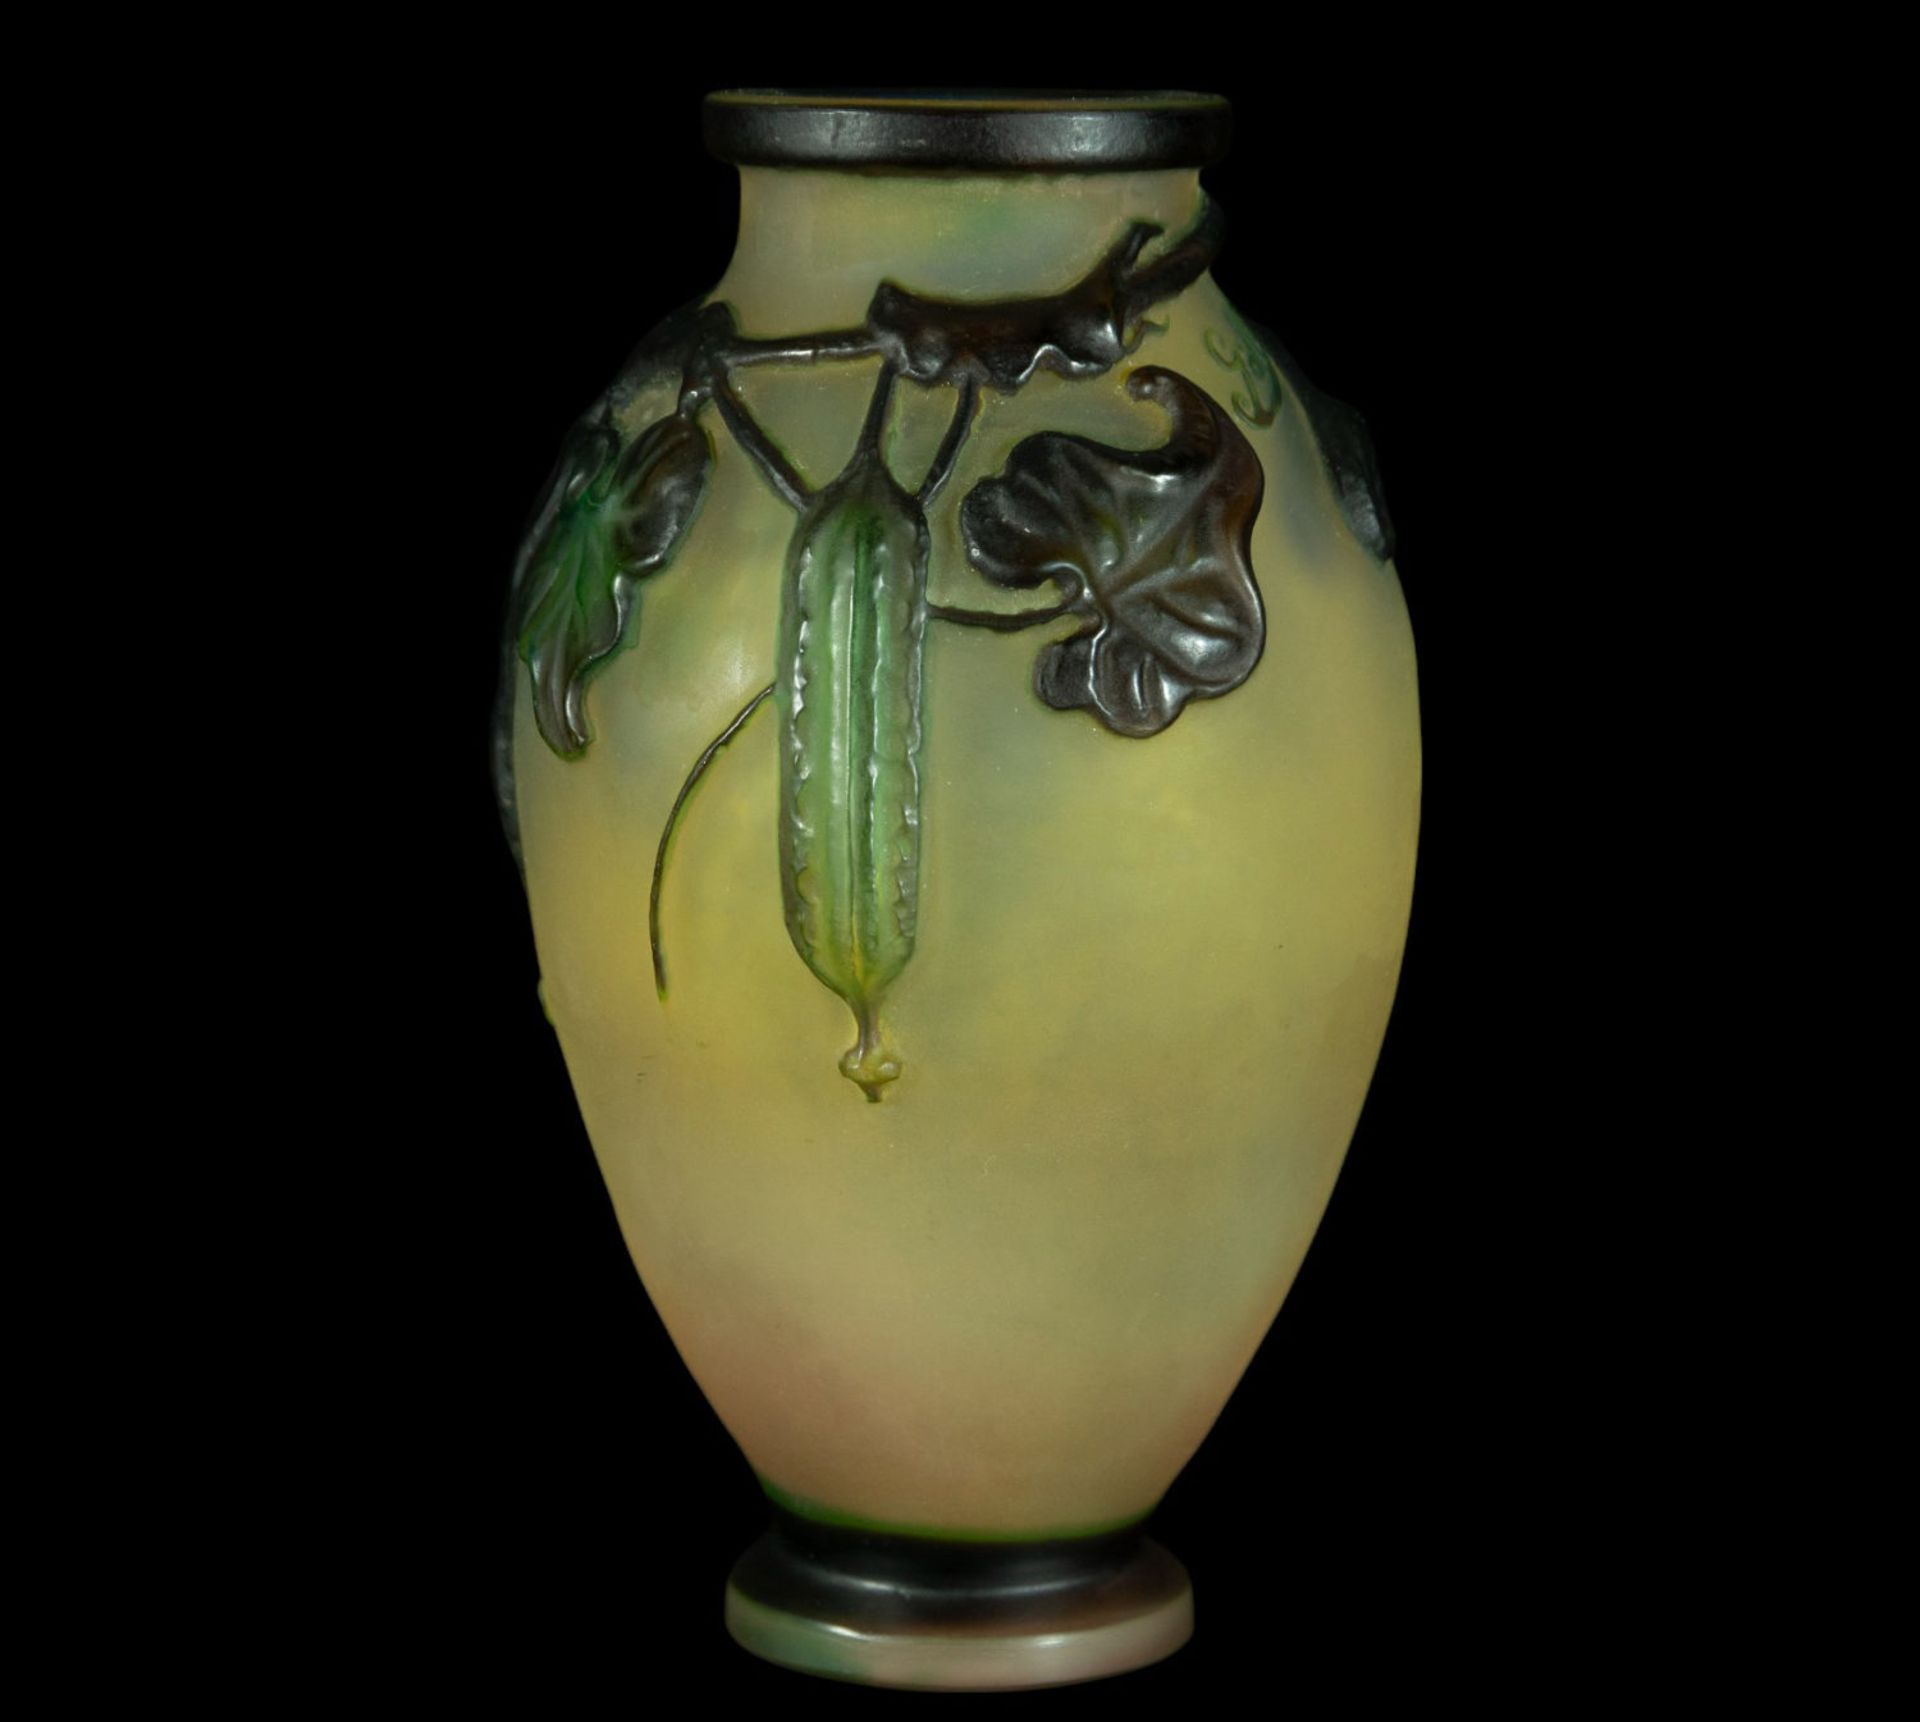 Exquisite Art Nouveau Gallé vase in blown glass and polychrome vitreous paste, 1900s - 1920s - Bild 3 aus 5